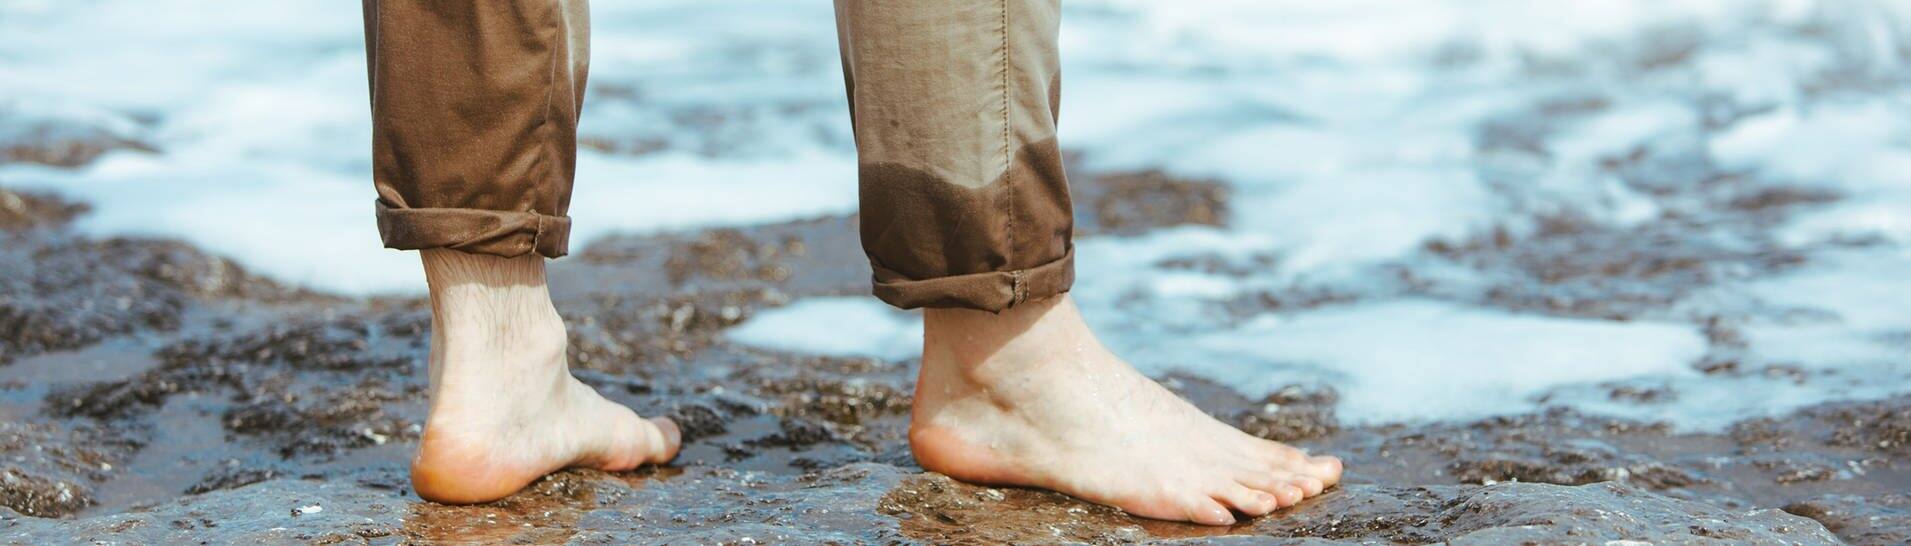 Mann mit halbnassen Hosenbeinen steht im Wasser (Foto: Adobe Stock, phpetrunina14)